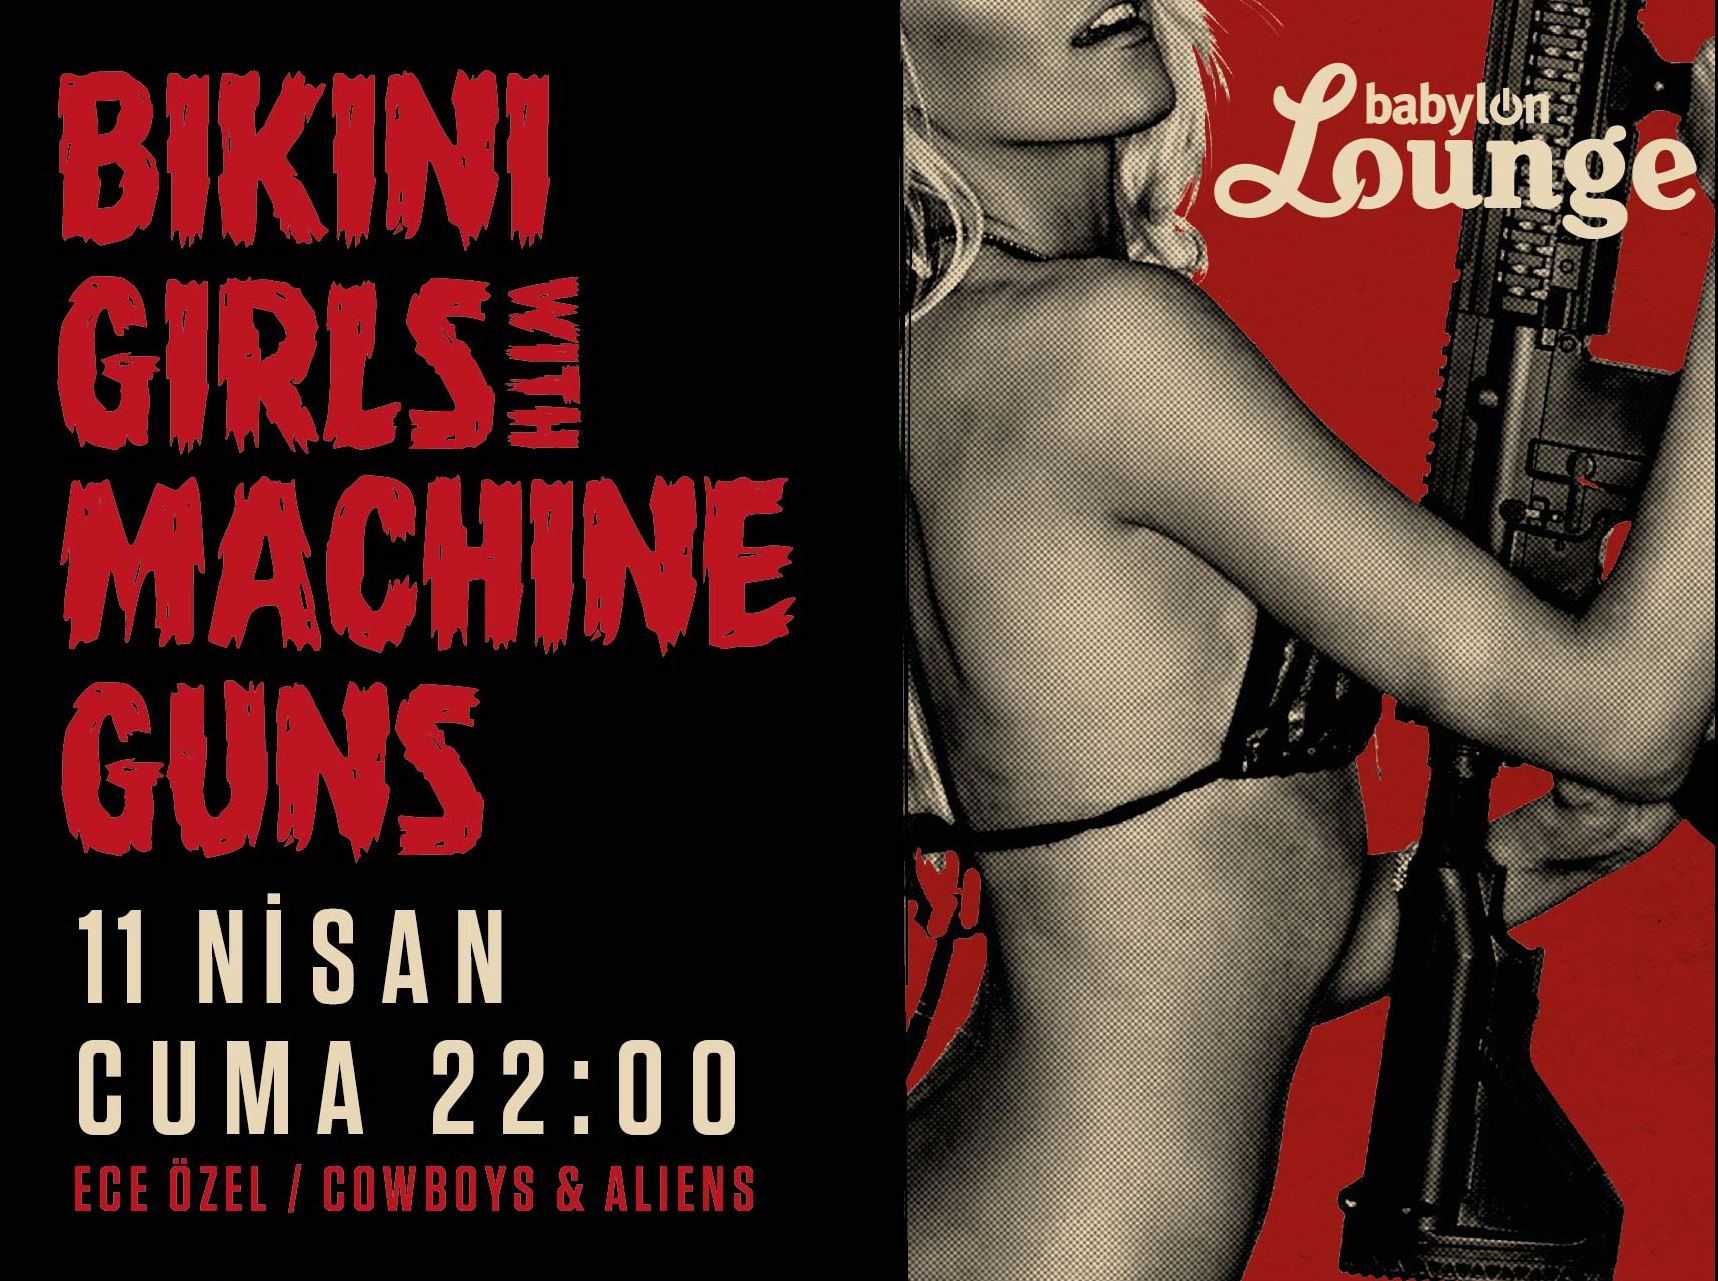 Bikini Girls with Machine Guns